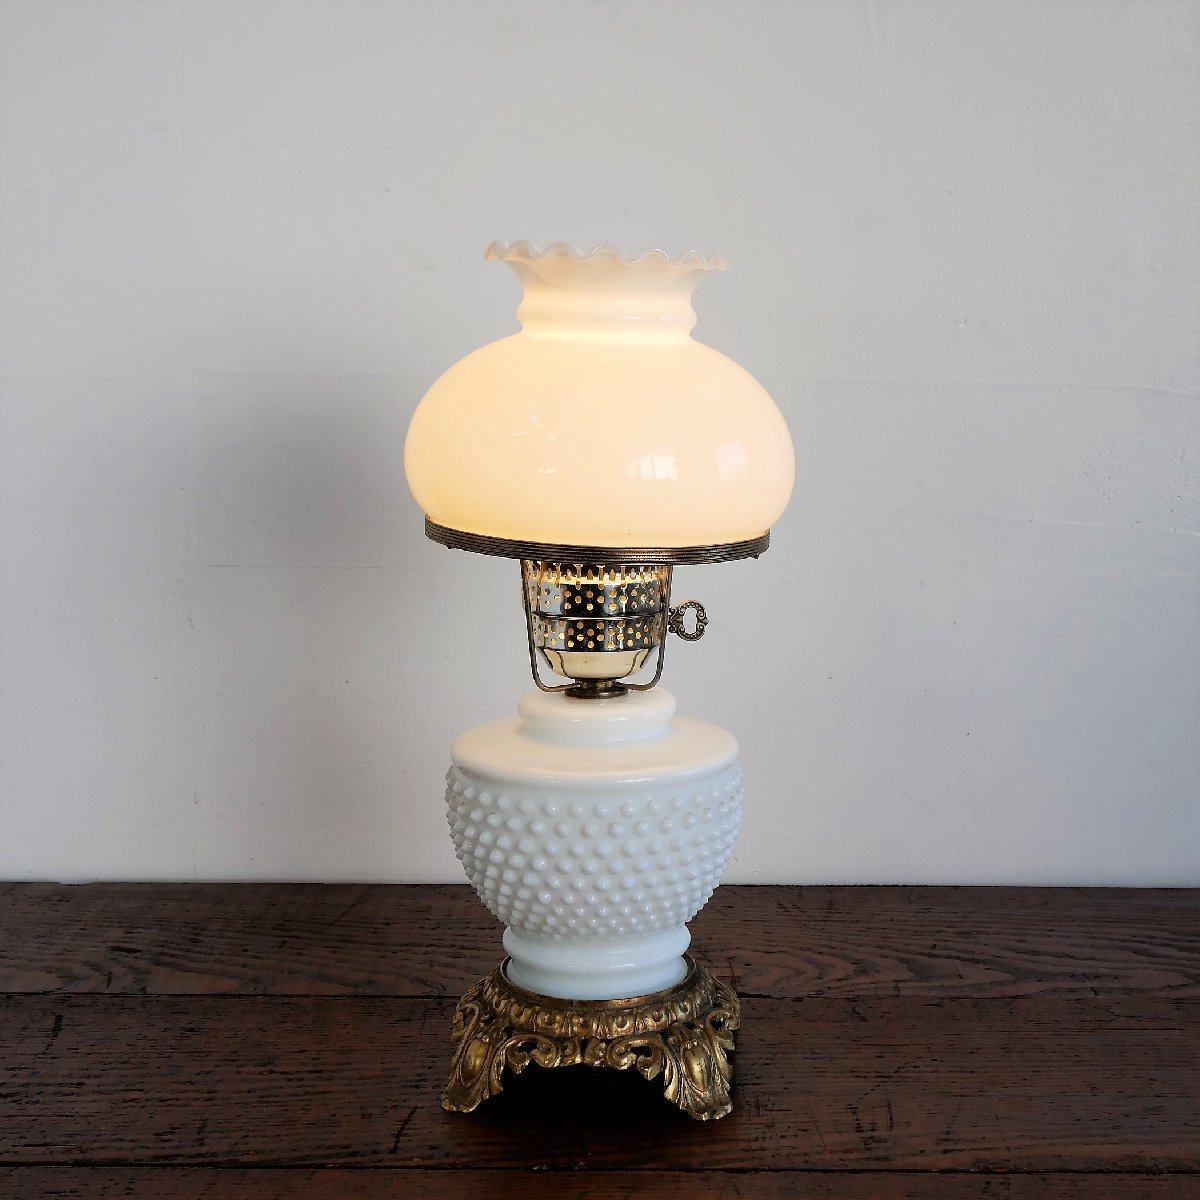 ホブネイル ミルクガラス テーブルランプ【#4564】アメリカ 60s-70s ヴィンテージ 照明 上下2灯 オイルランプ風